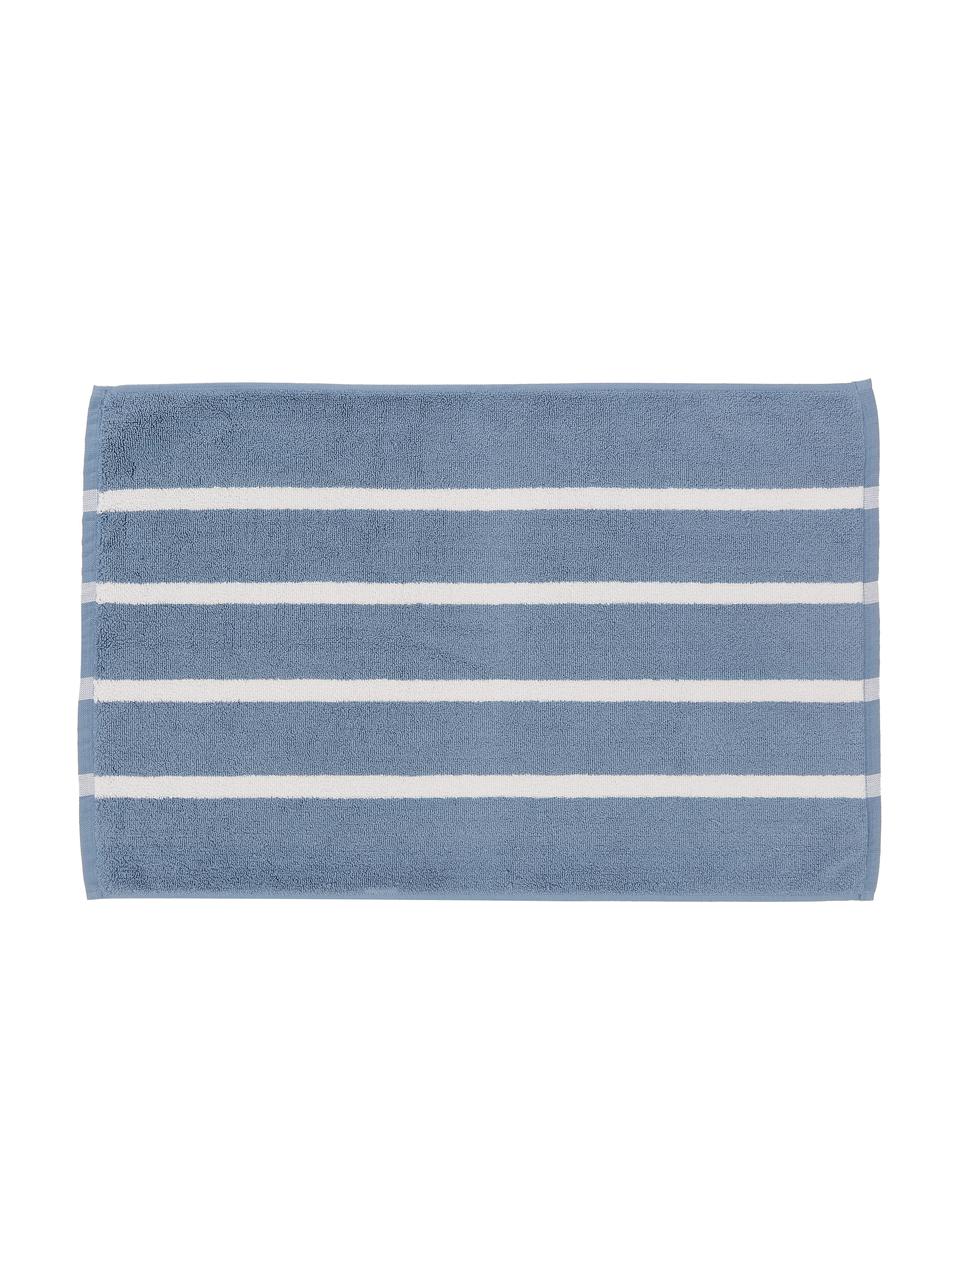 Gestreifter Badvorleger Menton, 100% Baumwolle, Blau, Weiß, 50 x 75 cm